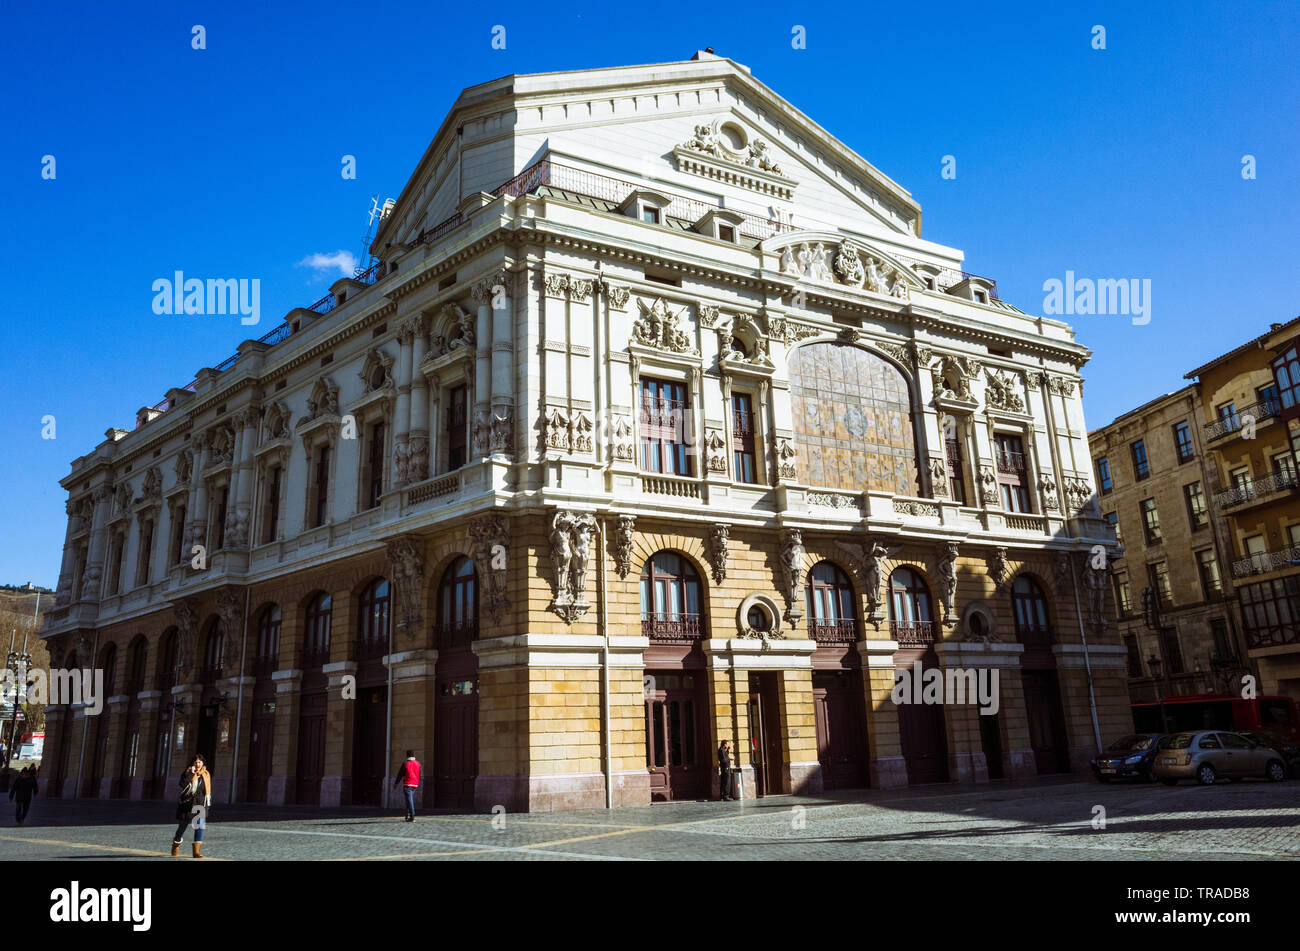 Bilbao, Vizcaya, Baskenland, Spanien: Teatro Arriaga Oper im neobarocken Stil erbaut vom Architekten Joaquín Rucoba im Jahre 1890. Zufällige Menschen i Stockfoto